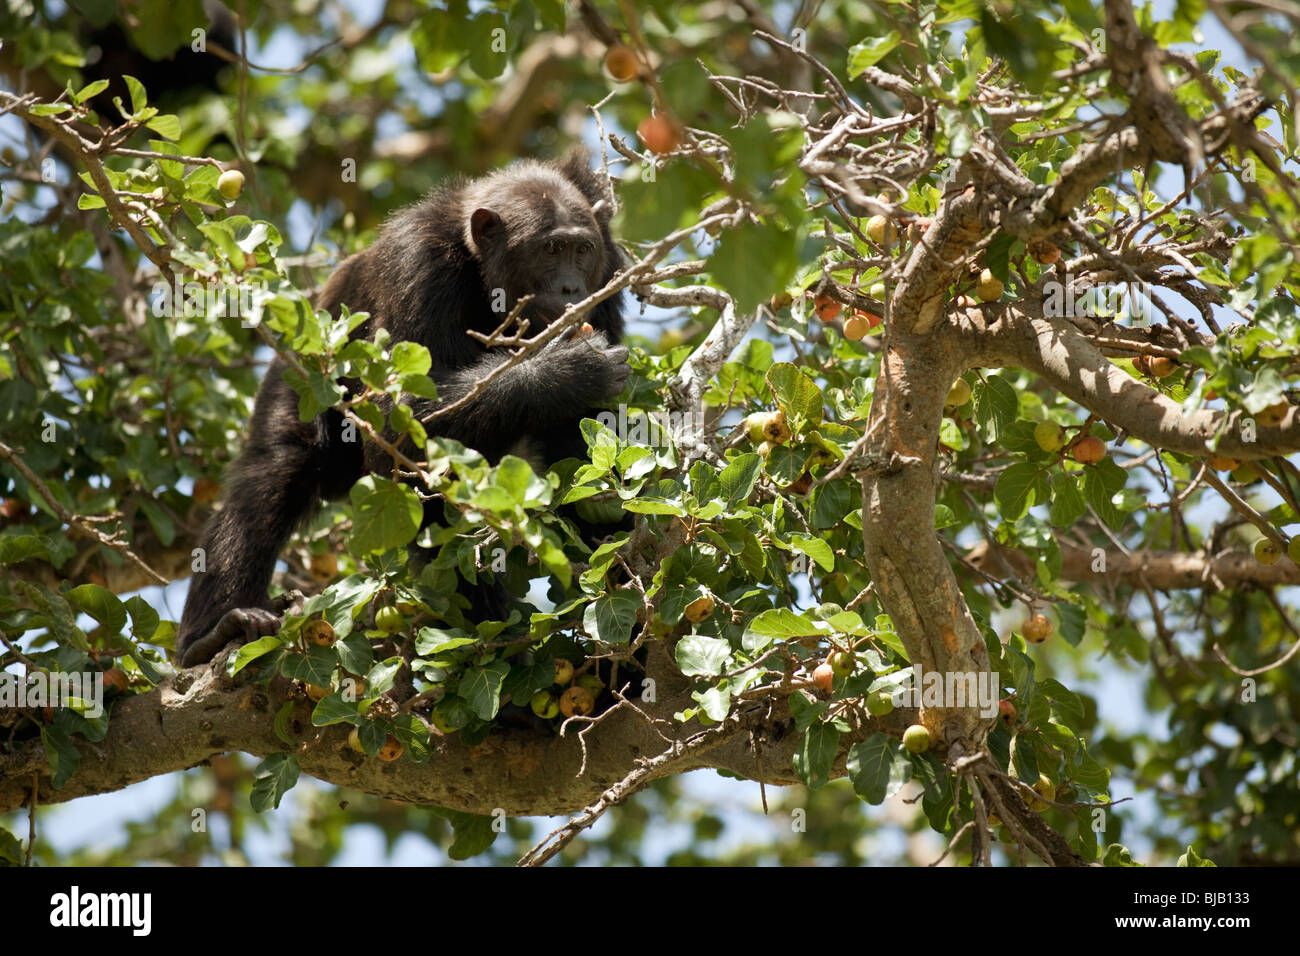 Lumumba, comer higos de una manera de árbol en la sabana, que él y los chimpancés se cruzaron sobre el terreno, con gran riesgo de depredación Foto de stock